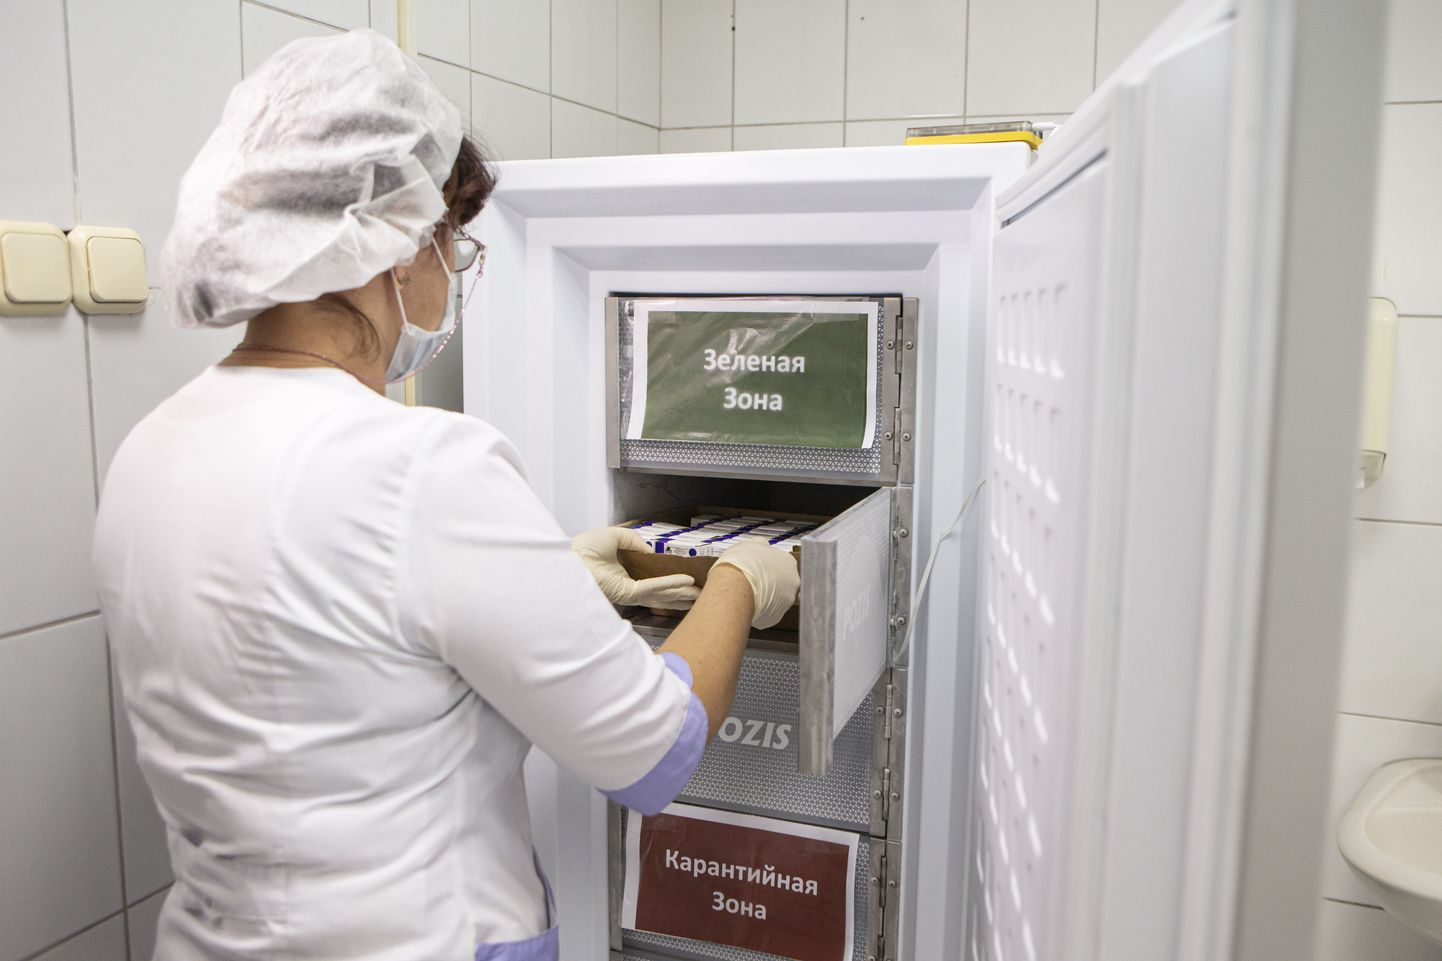 Meditsiinitöötaja võtab külmkapist Venemaal kliiniliste katsetuste viimases faasis aktiivselt kasutatava Covid-19 vaktsiini Sputnik V (15. september, 2020 Moskvas). Vaktsiinide säilitamisel ja transportimisel tuleb järgida etteantud külmaahelat, mis uue koroonavaktsiini puhul võib osutuda väga raskeks ülesandeks. Ribonukleiinhappe-põhiste vaktsiinide transportimiseks nõutakse ülimadalaid temperatuure.